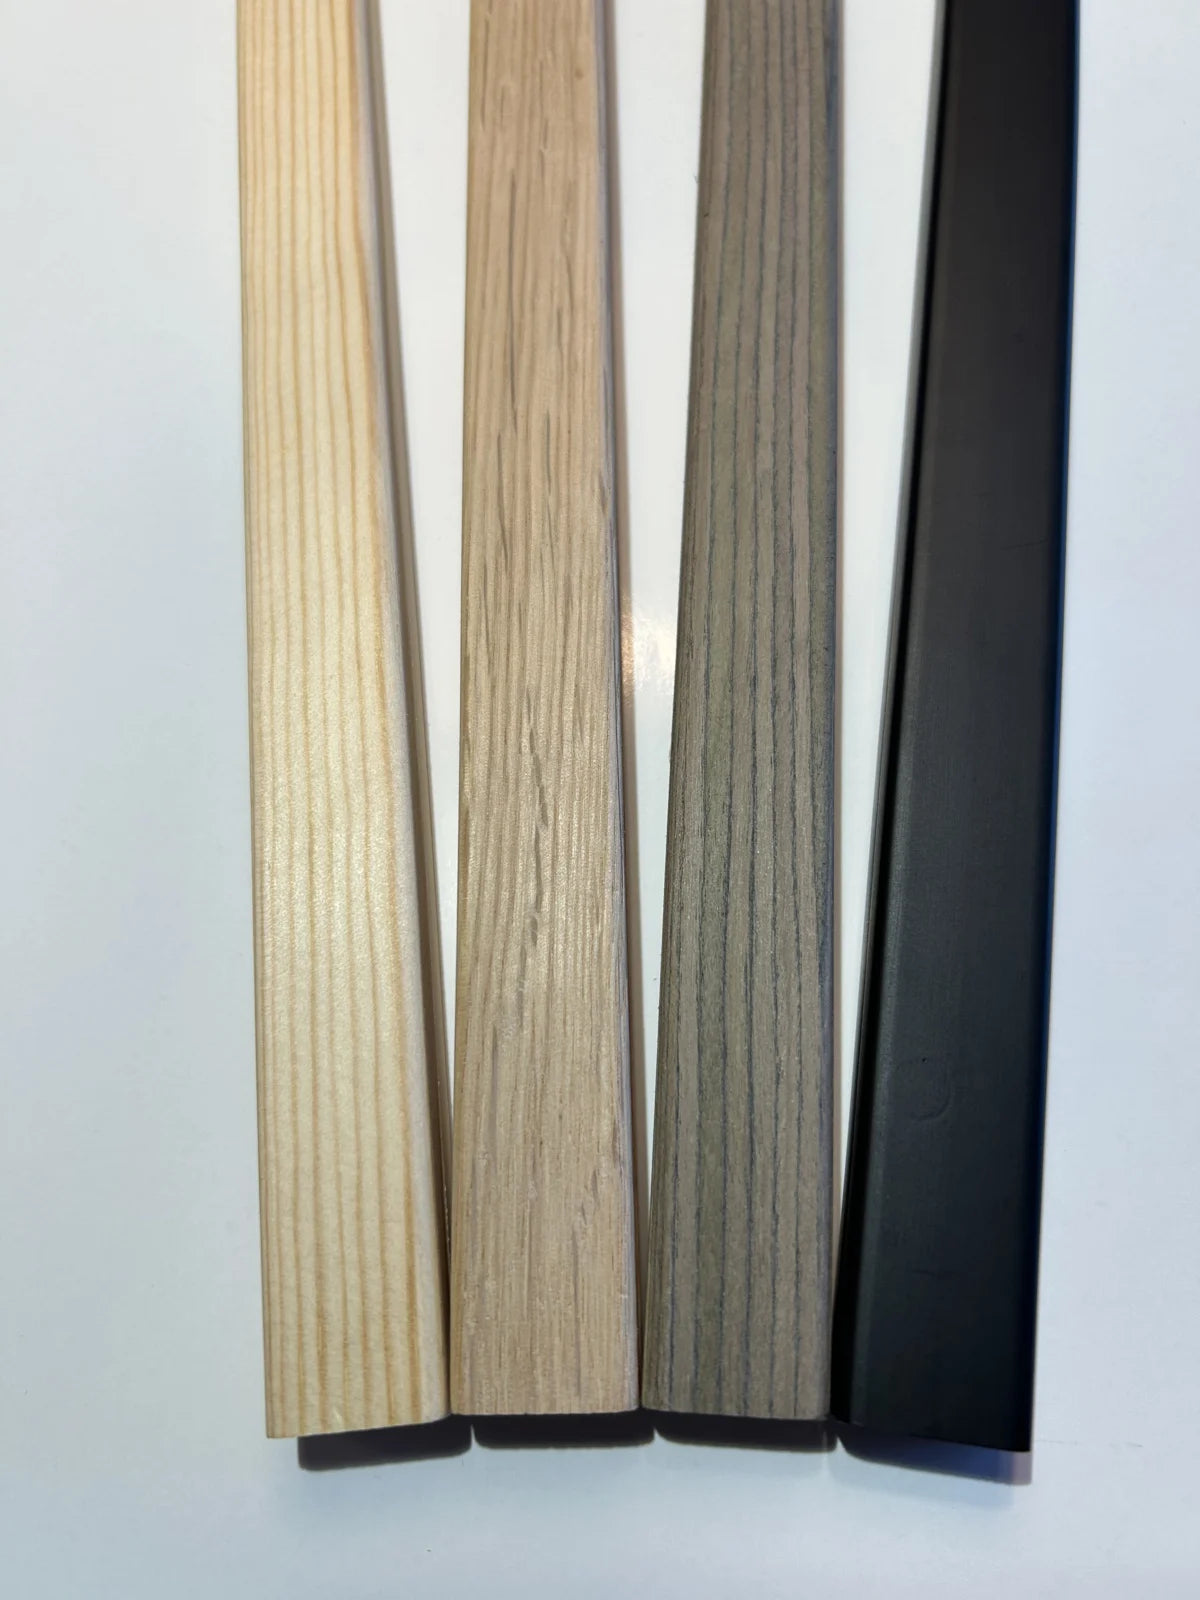 Posterhanger A2 formaat (43 cm) Eiken hout